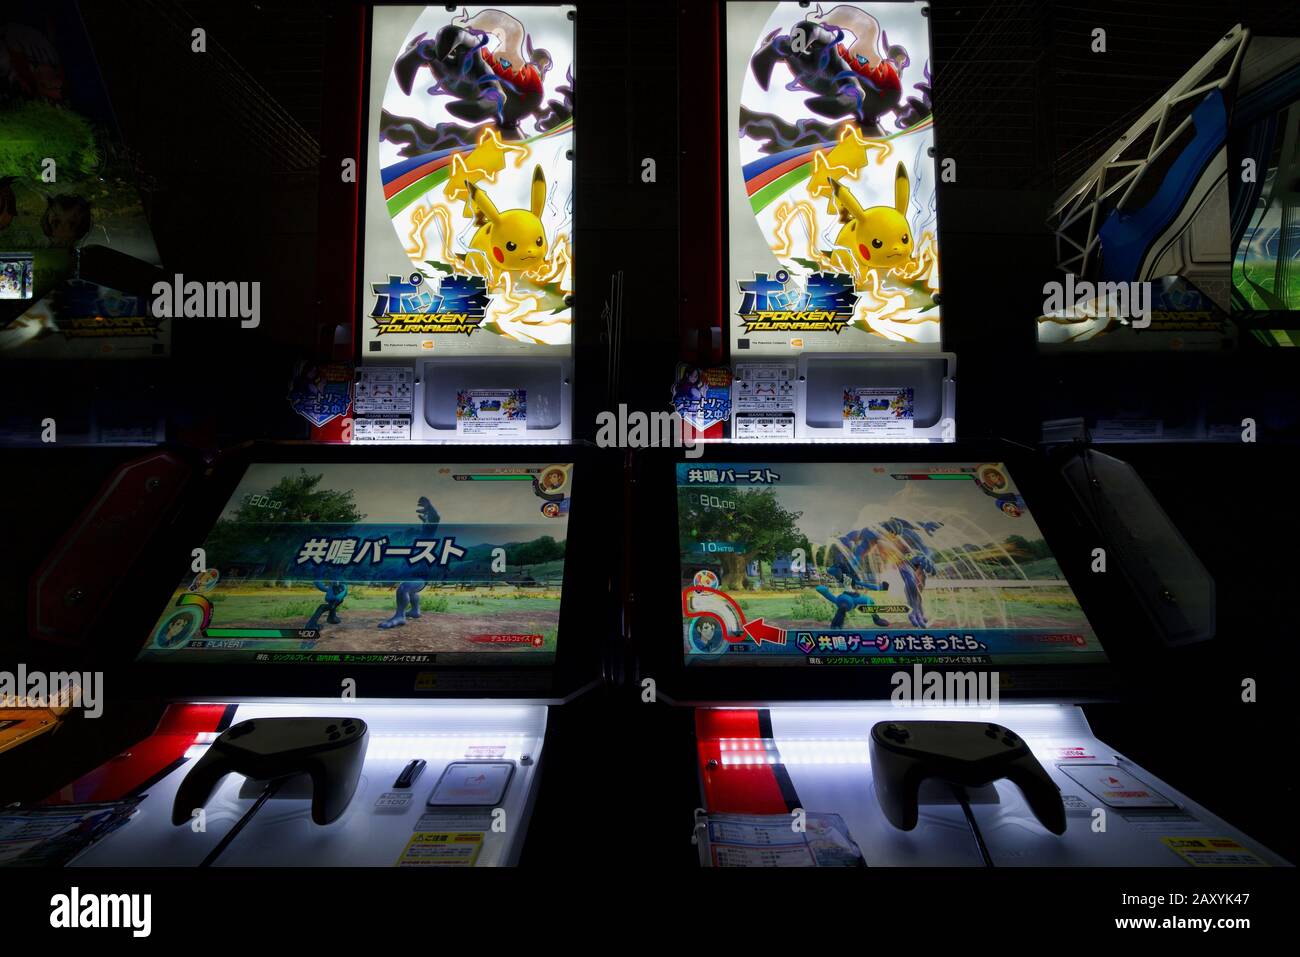 Arcade game machines inside Warehouse Arcade (Anata no Warehouse) at Kawasaki, Japan Stock Photo